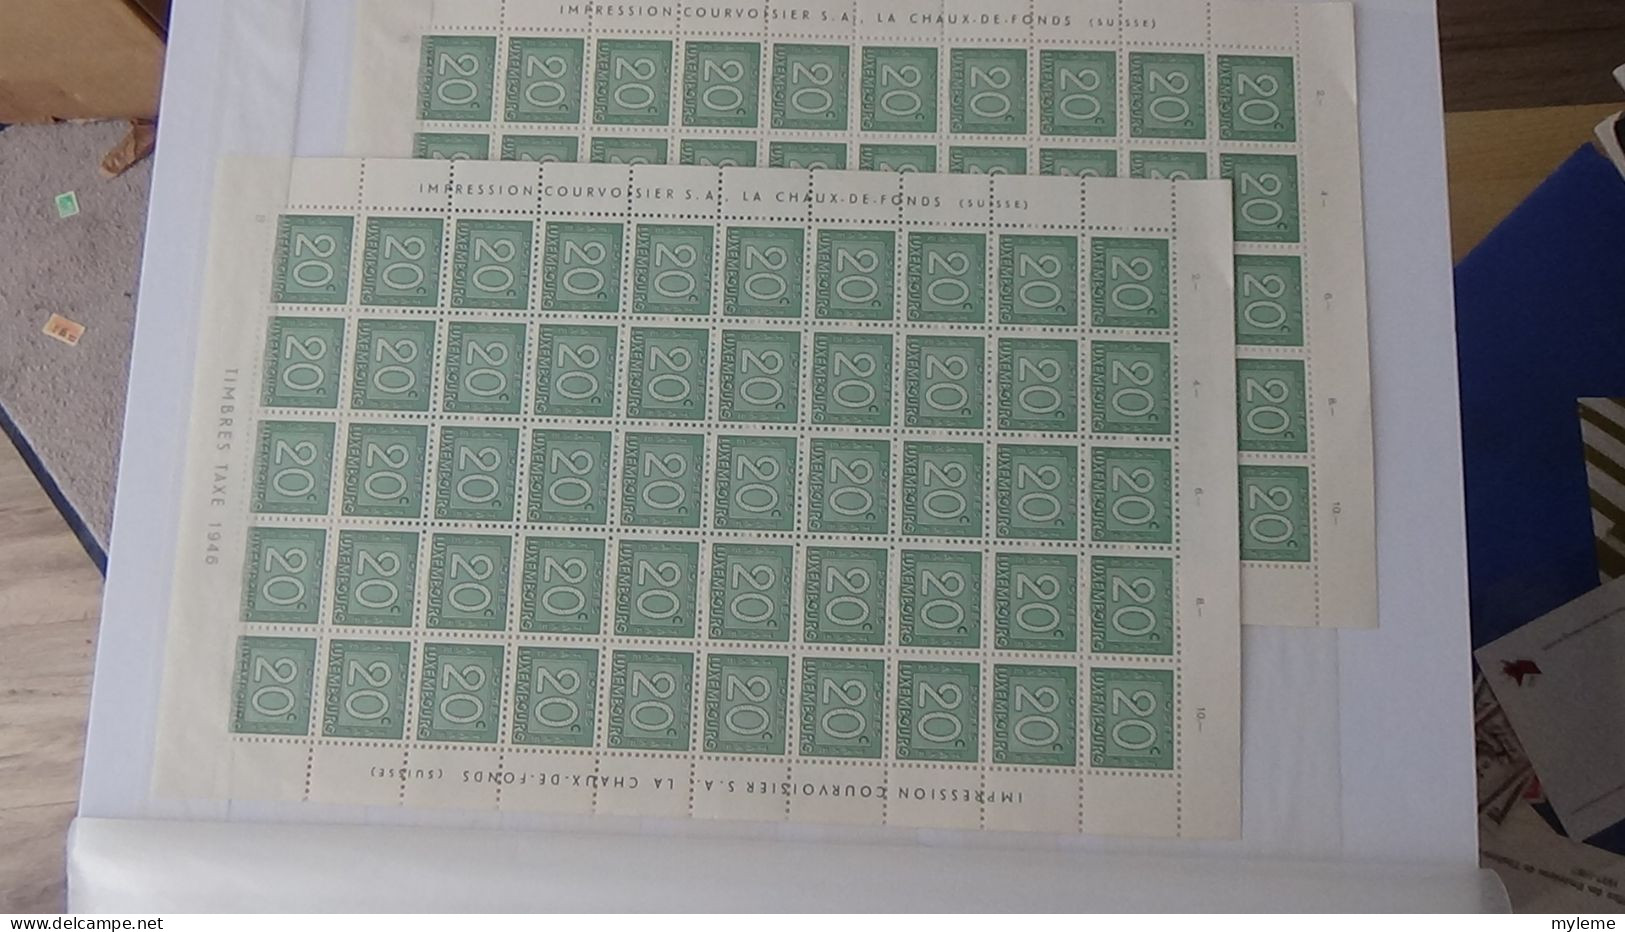 BF6 Bel ensemble de timbres et blocs ** de divers pays dont URUGUAY (voir commentaires)  A saisir !!!